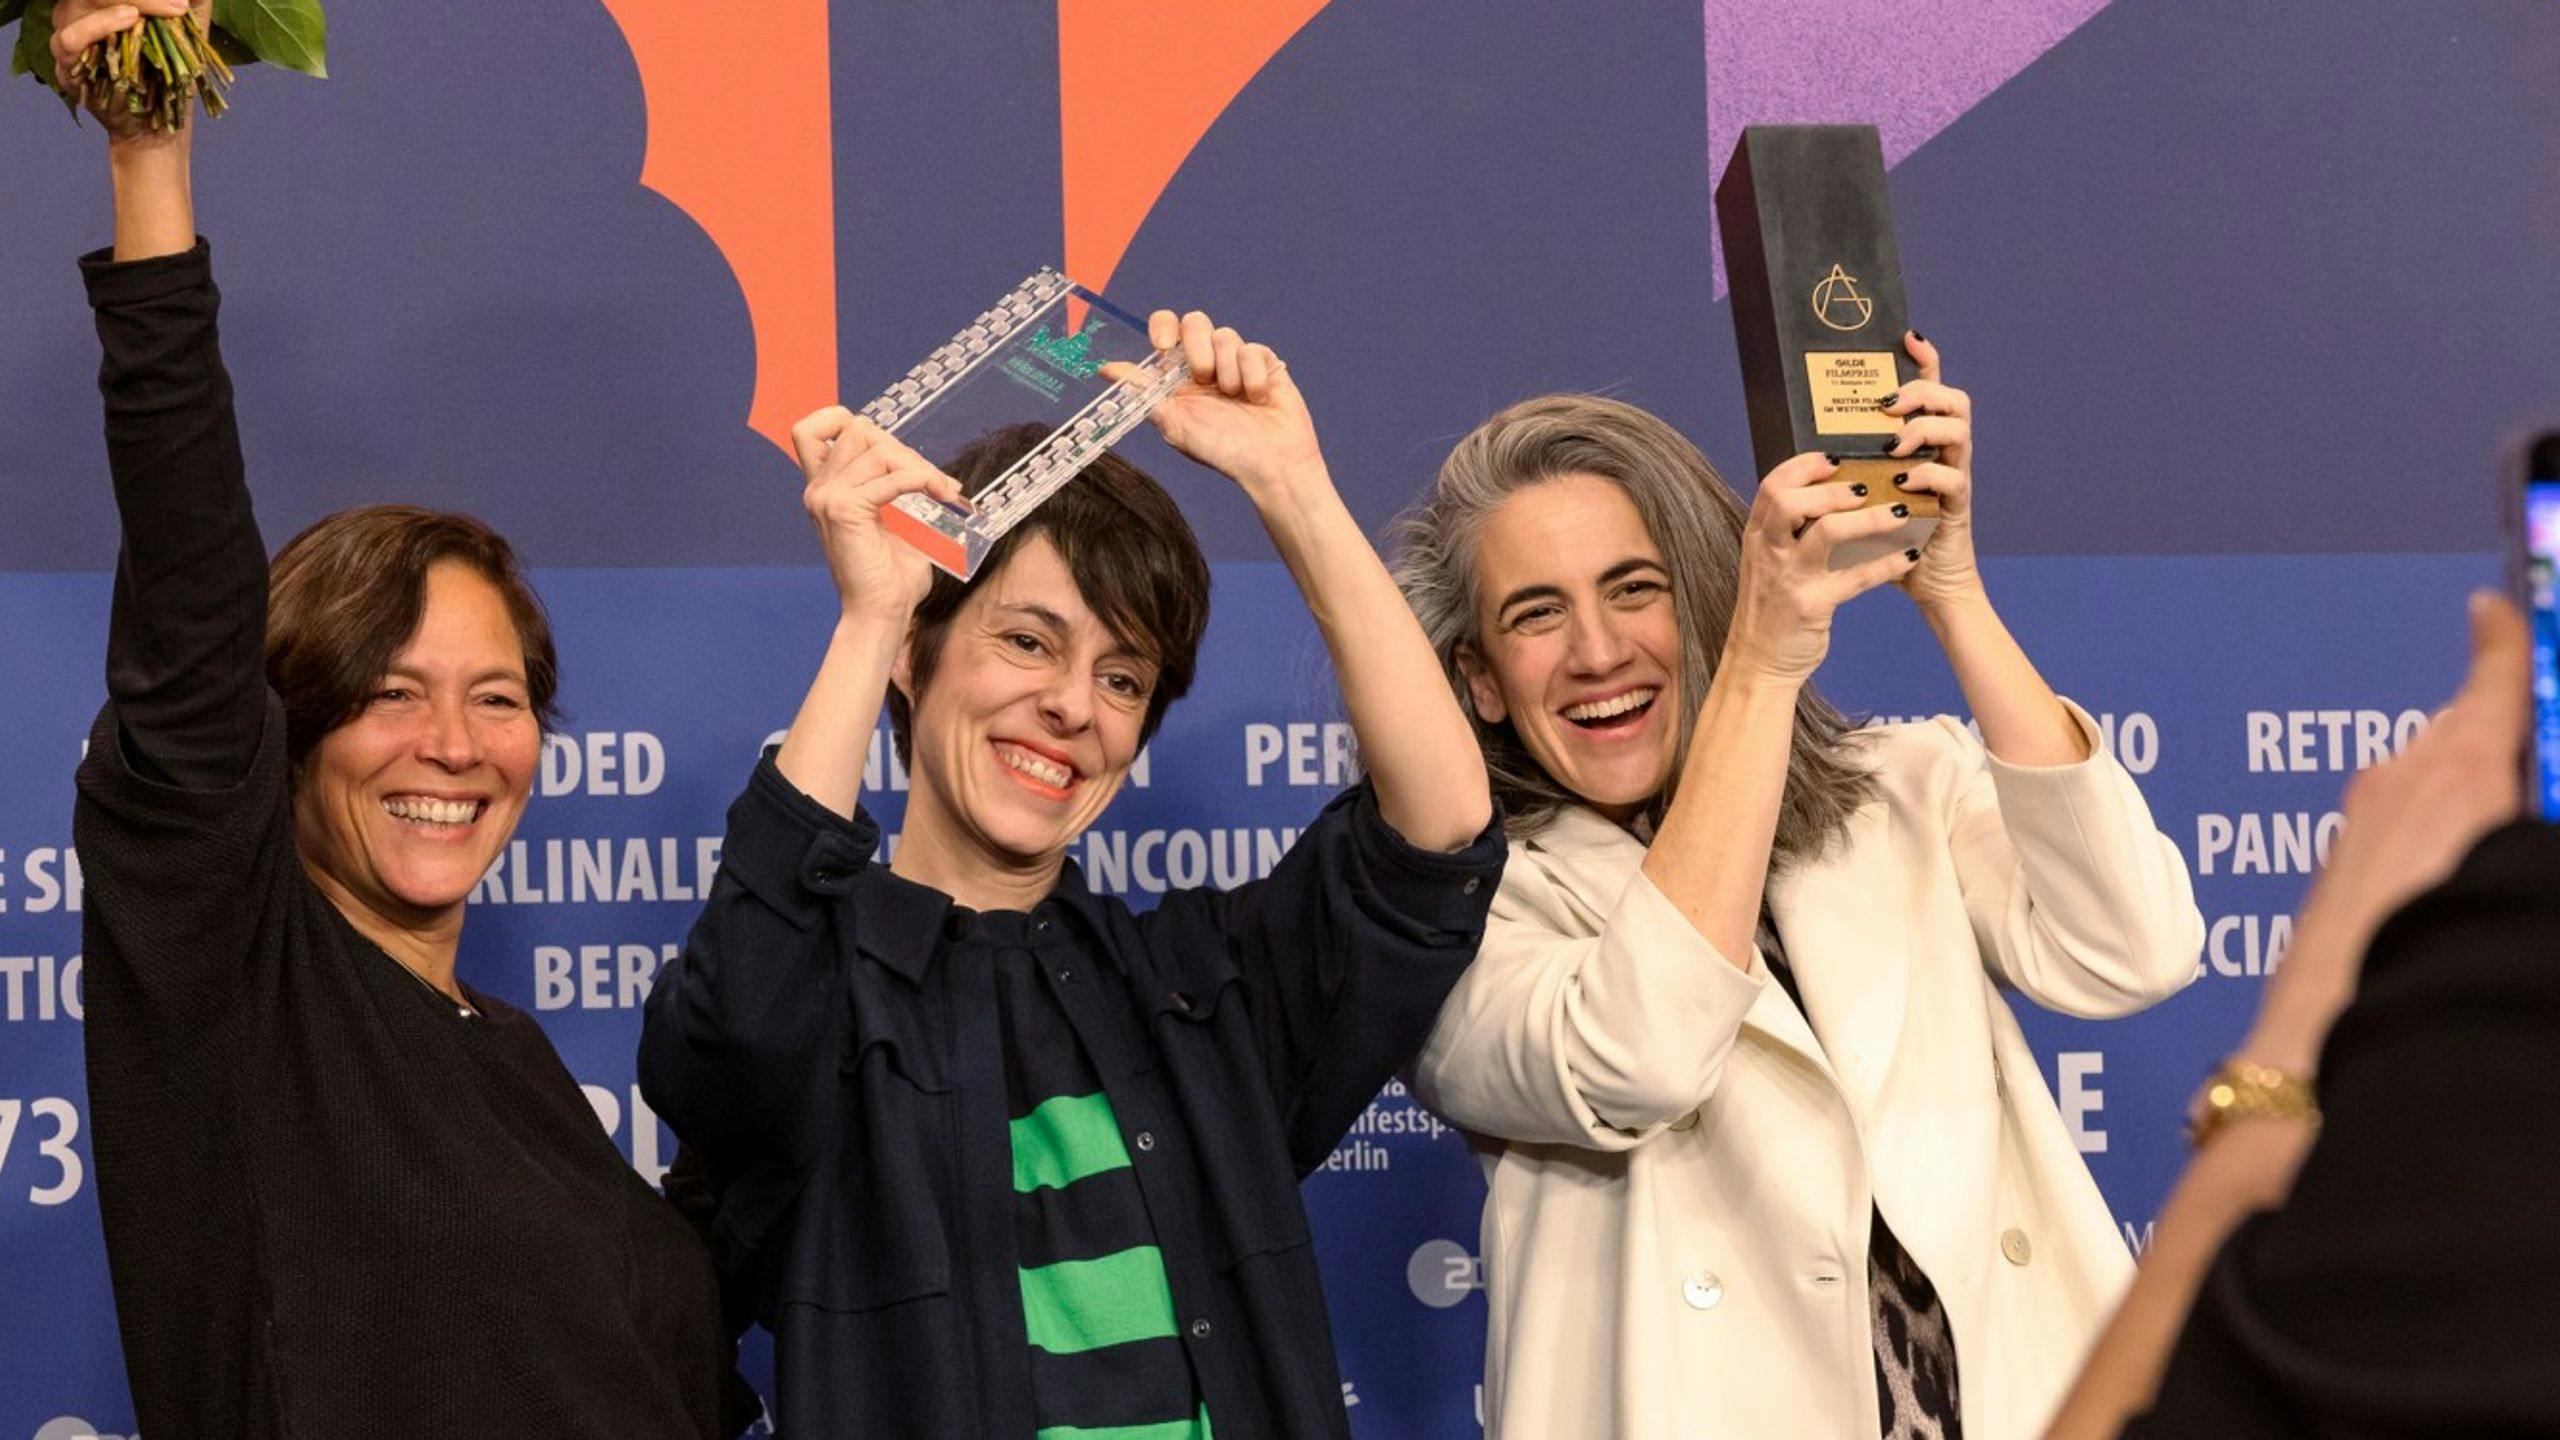 Valérie Delpierre, Estibaliz Urresola Solaguren y Lara Izaguirre con uno de los premios de '20.000 especies de abejas' en Berlín